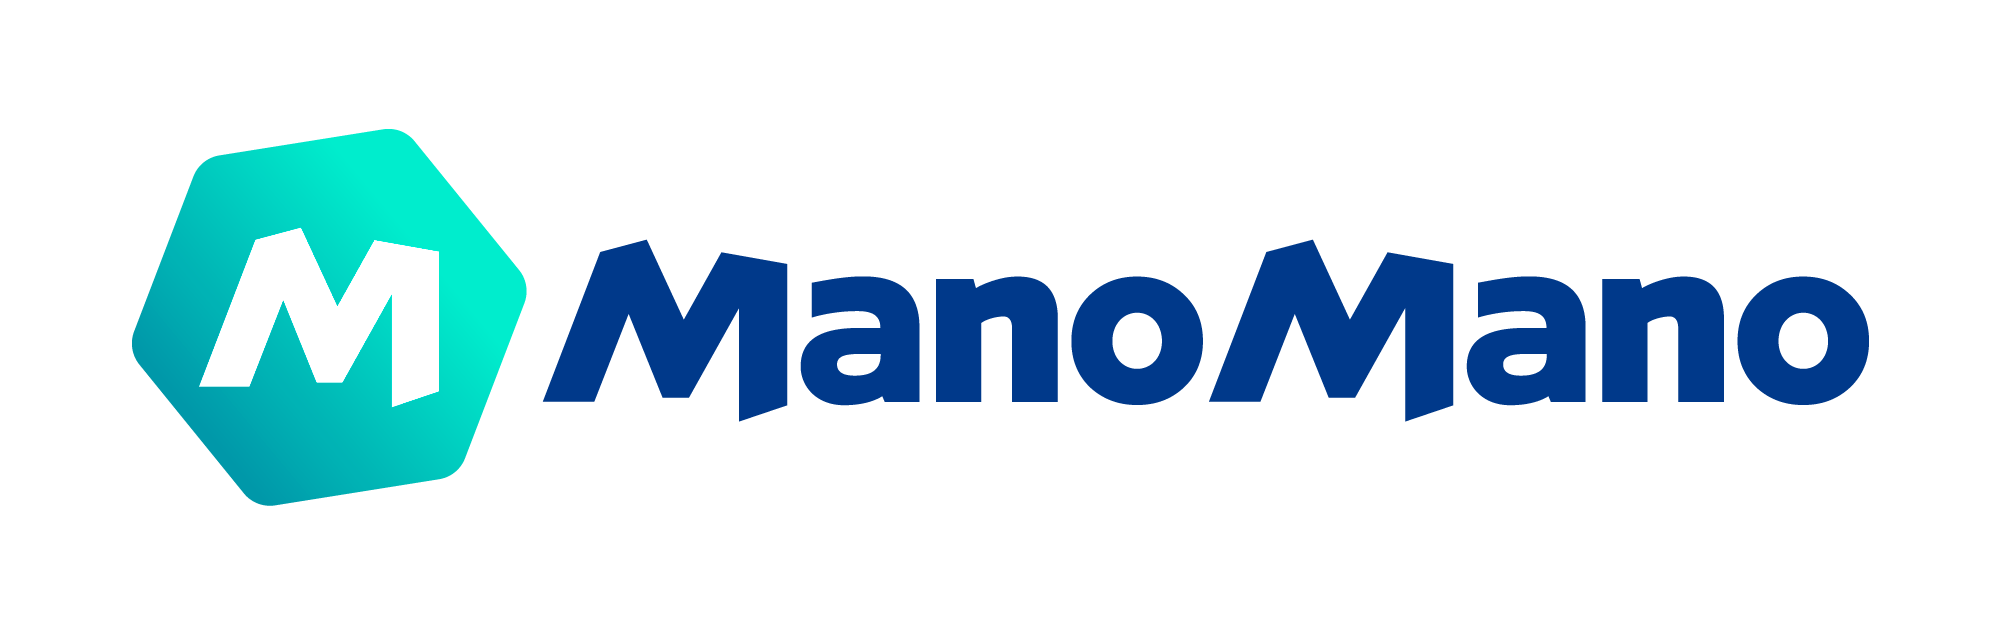 ManoMano: Abmahnungen wegen fehlender Widerrufsbelehrung und AGB